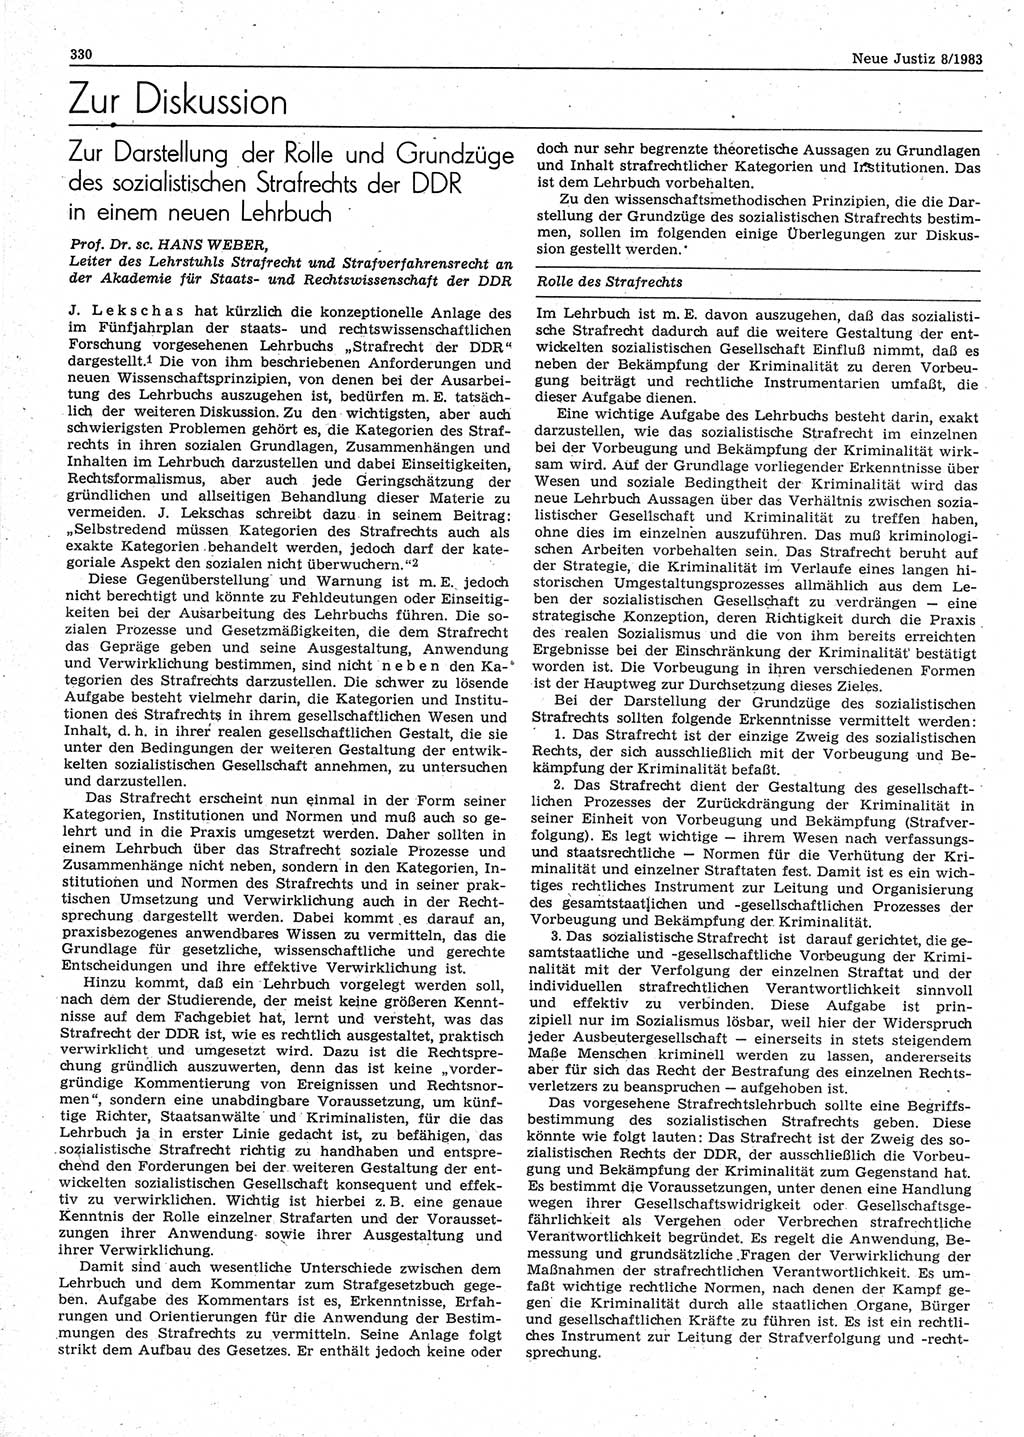 Neue Justiz (NJ), Zeitschrift für sozialistisches Recht und Gesetzlichkeit [Deutsche Demokratische Republik (DDR)], 37. Jahrgang 1983, Seite 330 (NJ DDR 1983, S. 330)